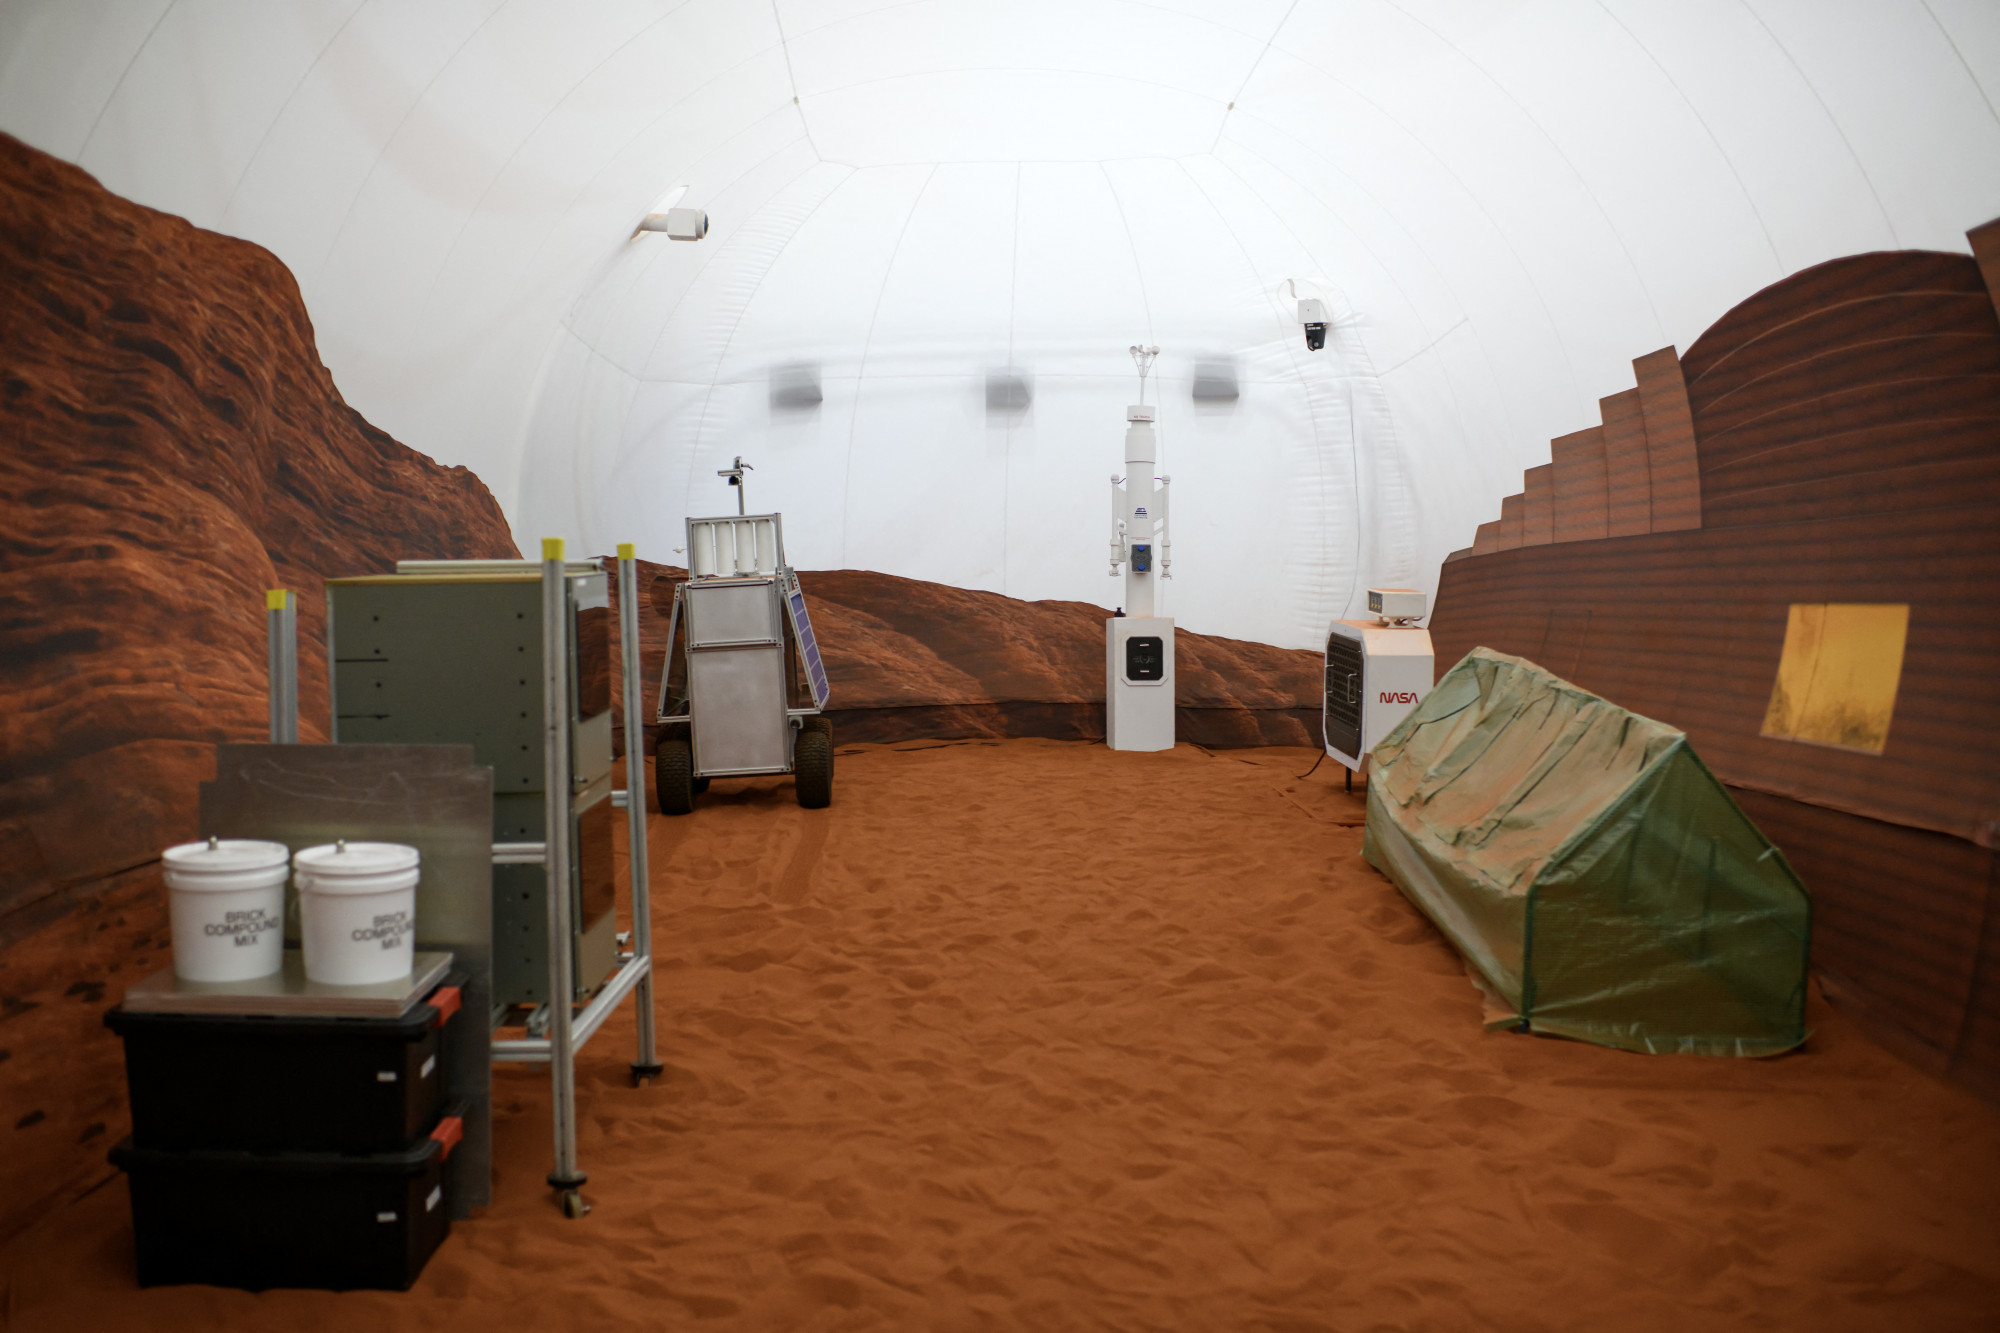 Egy évre összeköltöznek a NASA Mars-szimulátorának lakói Texasban